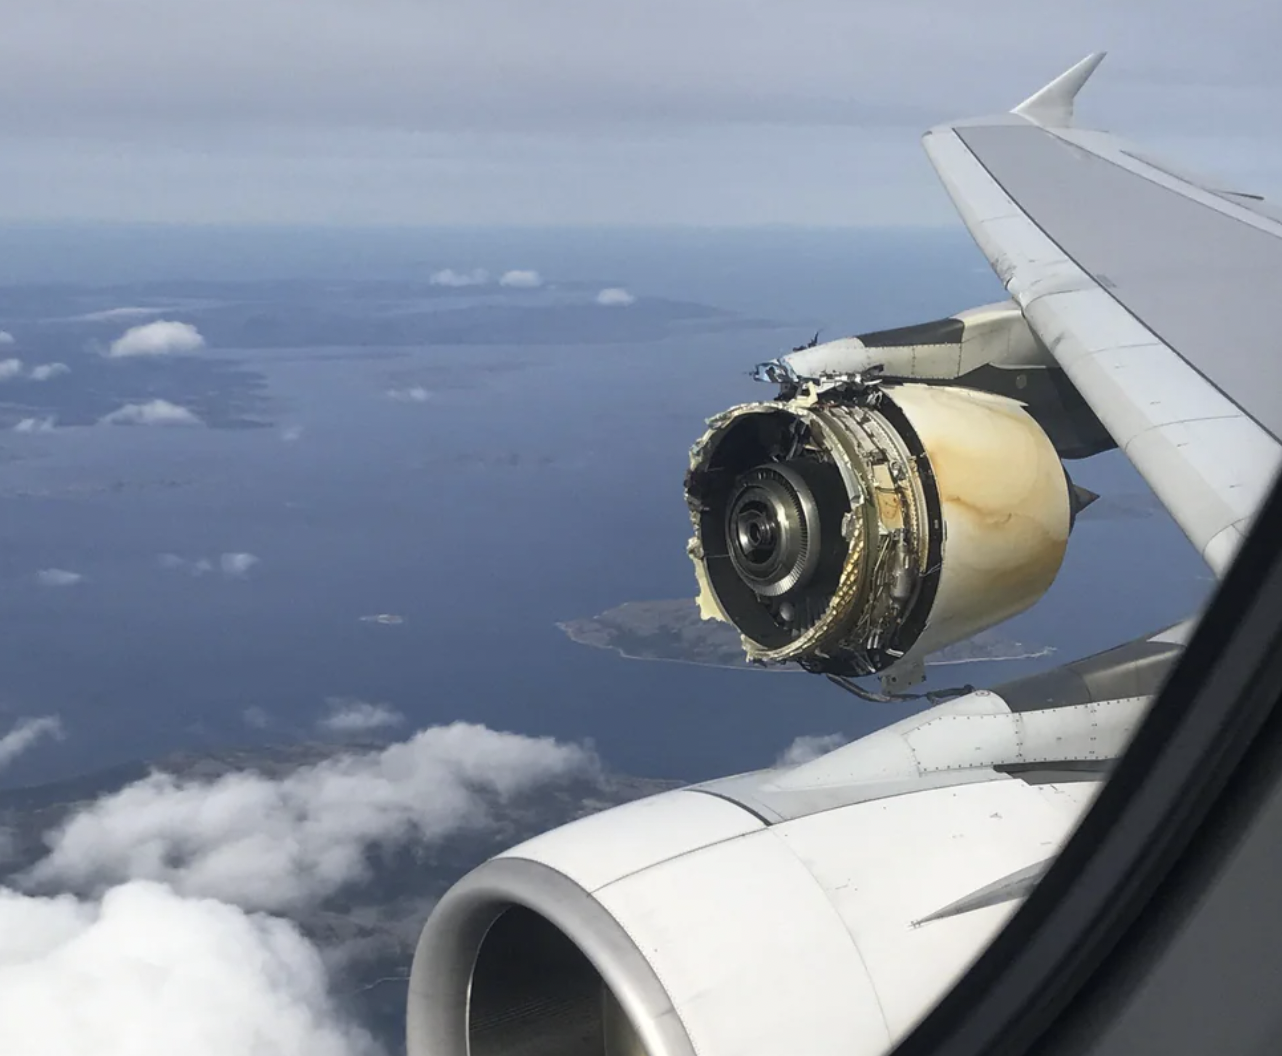 air france a380 engine failure